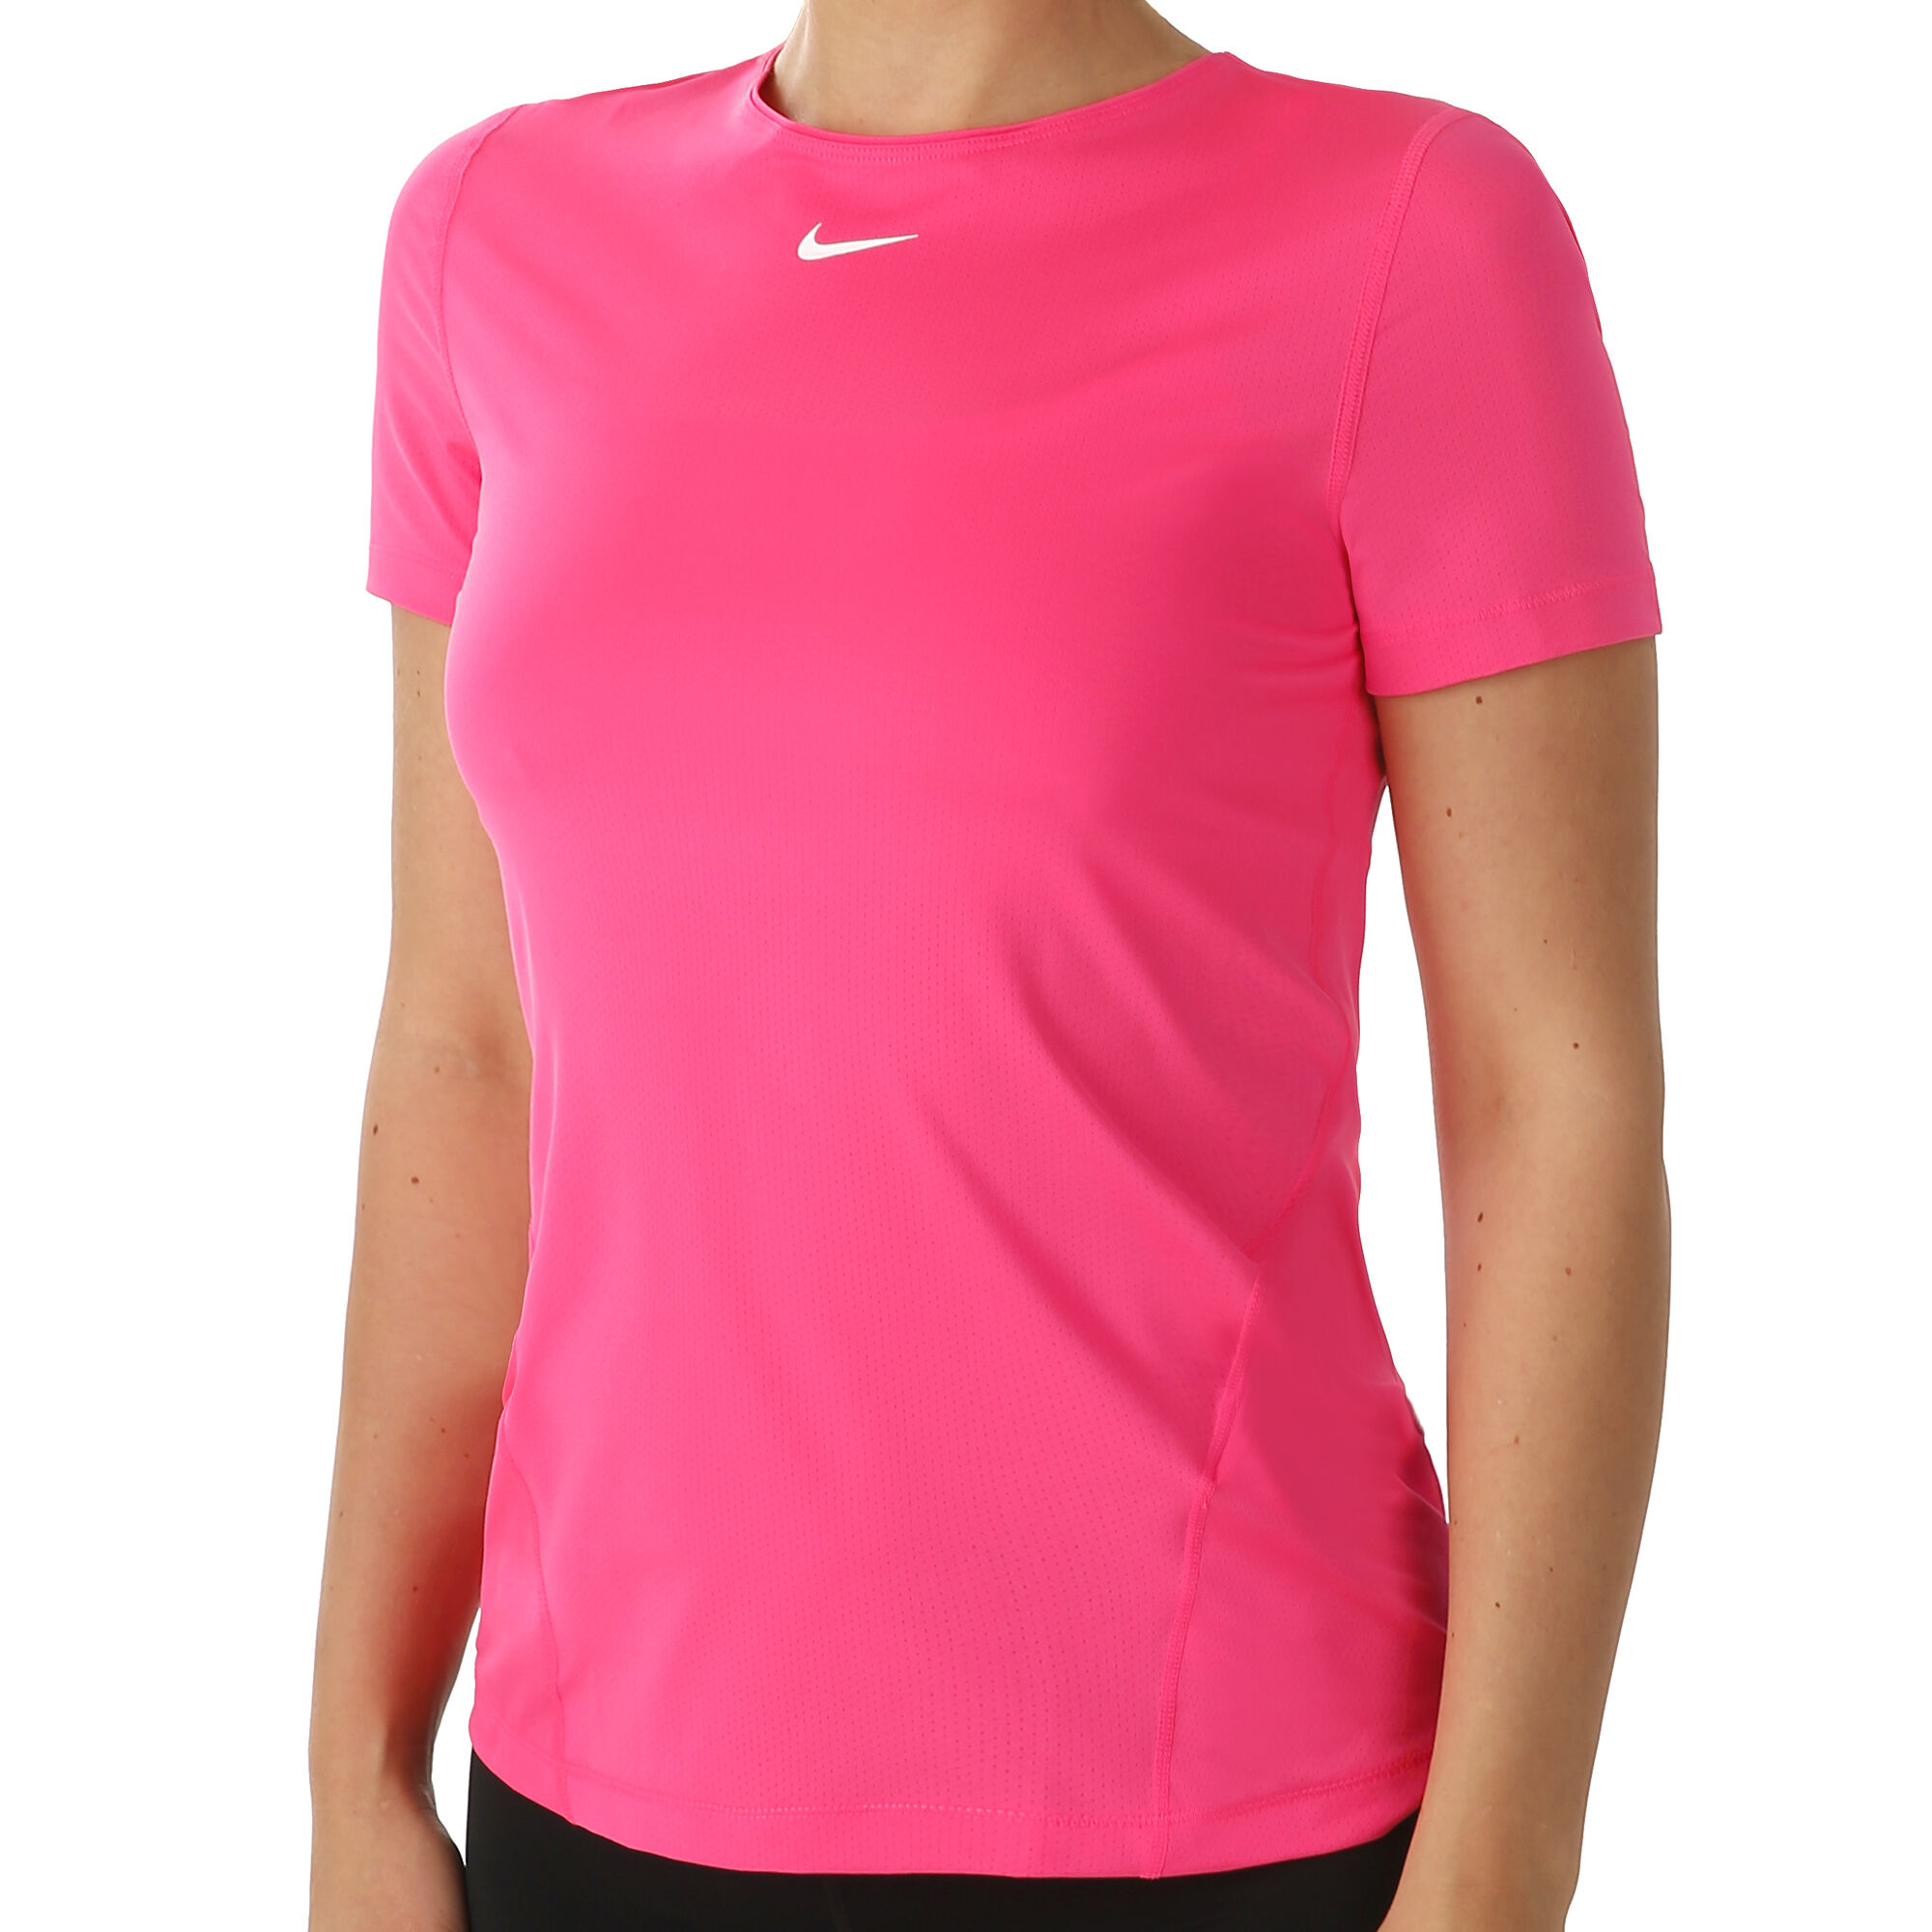 Ruimteschip Verschuiving Wrok buy Nike Pro T-Shirt Women - Neon Pink, White online | Tennis-Point